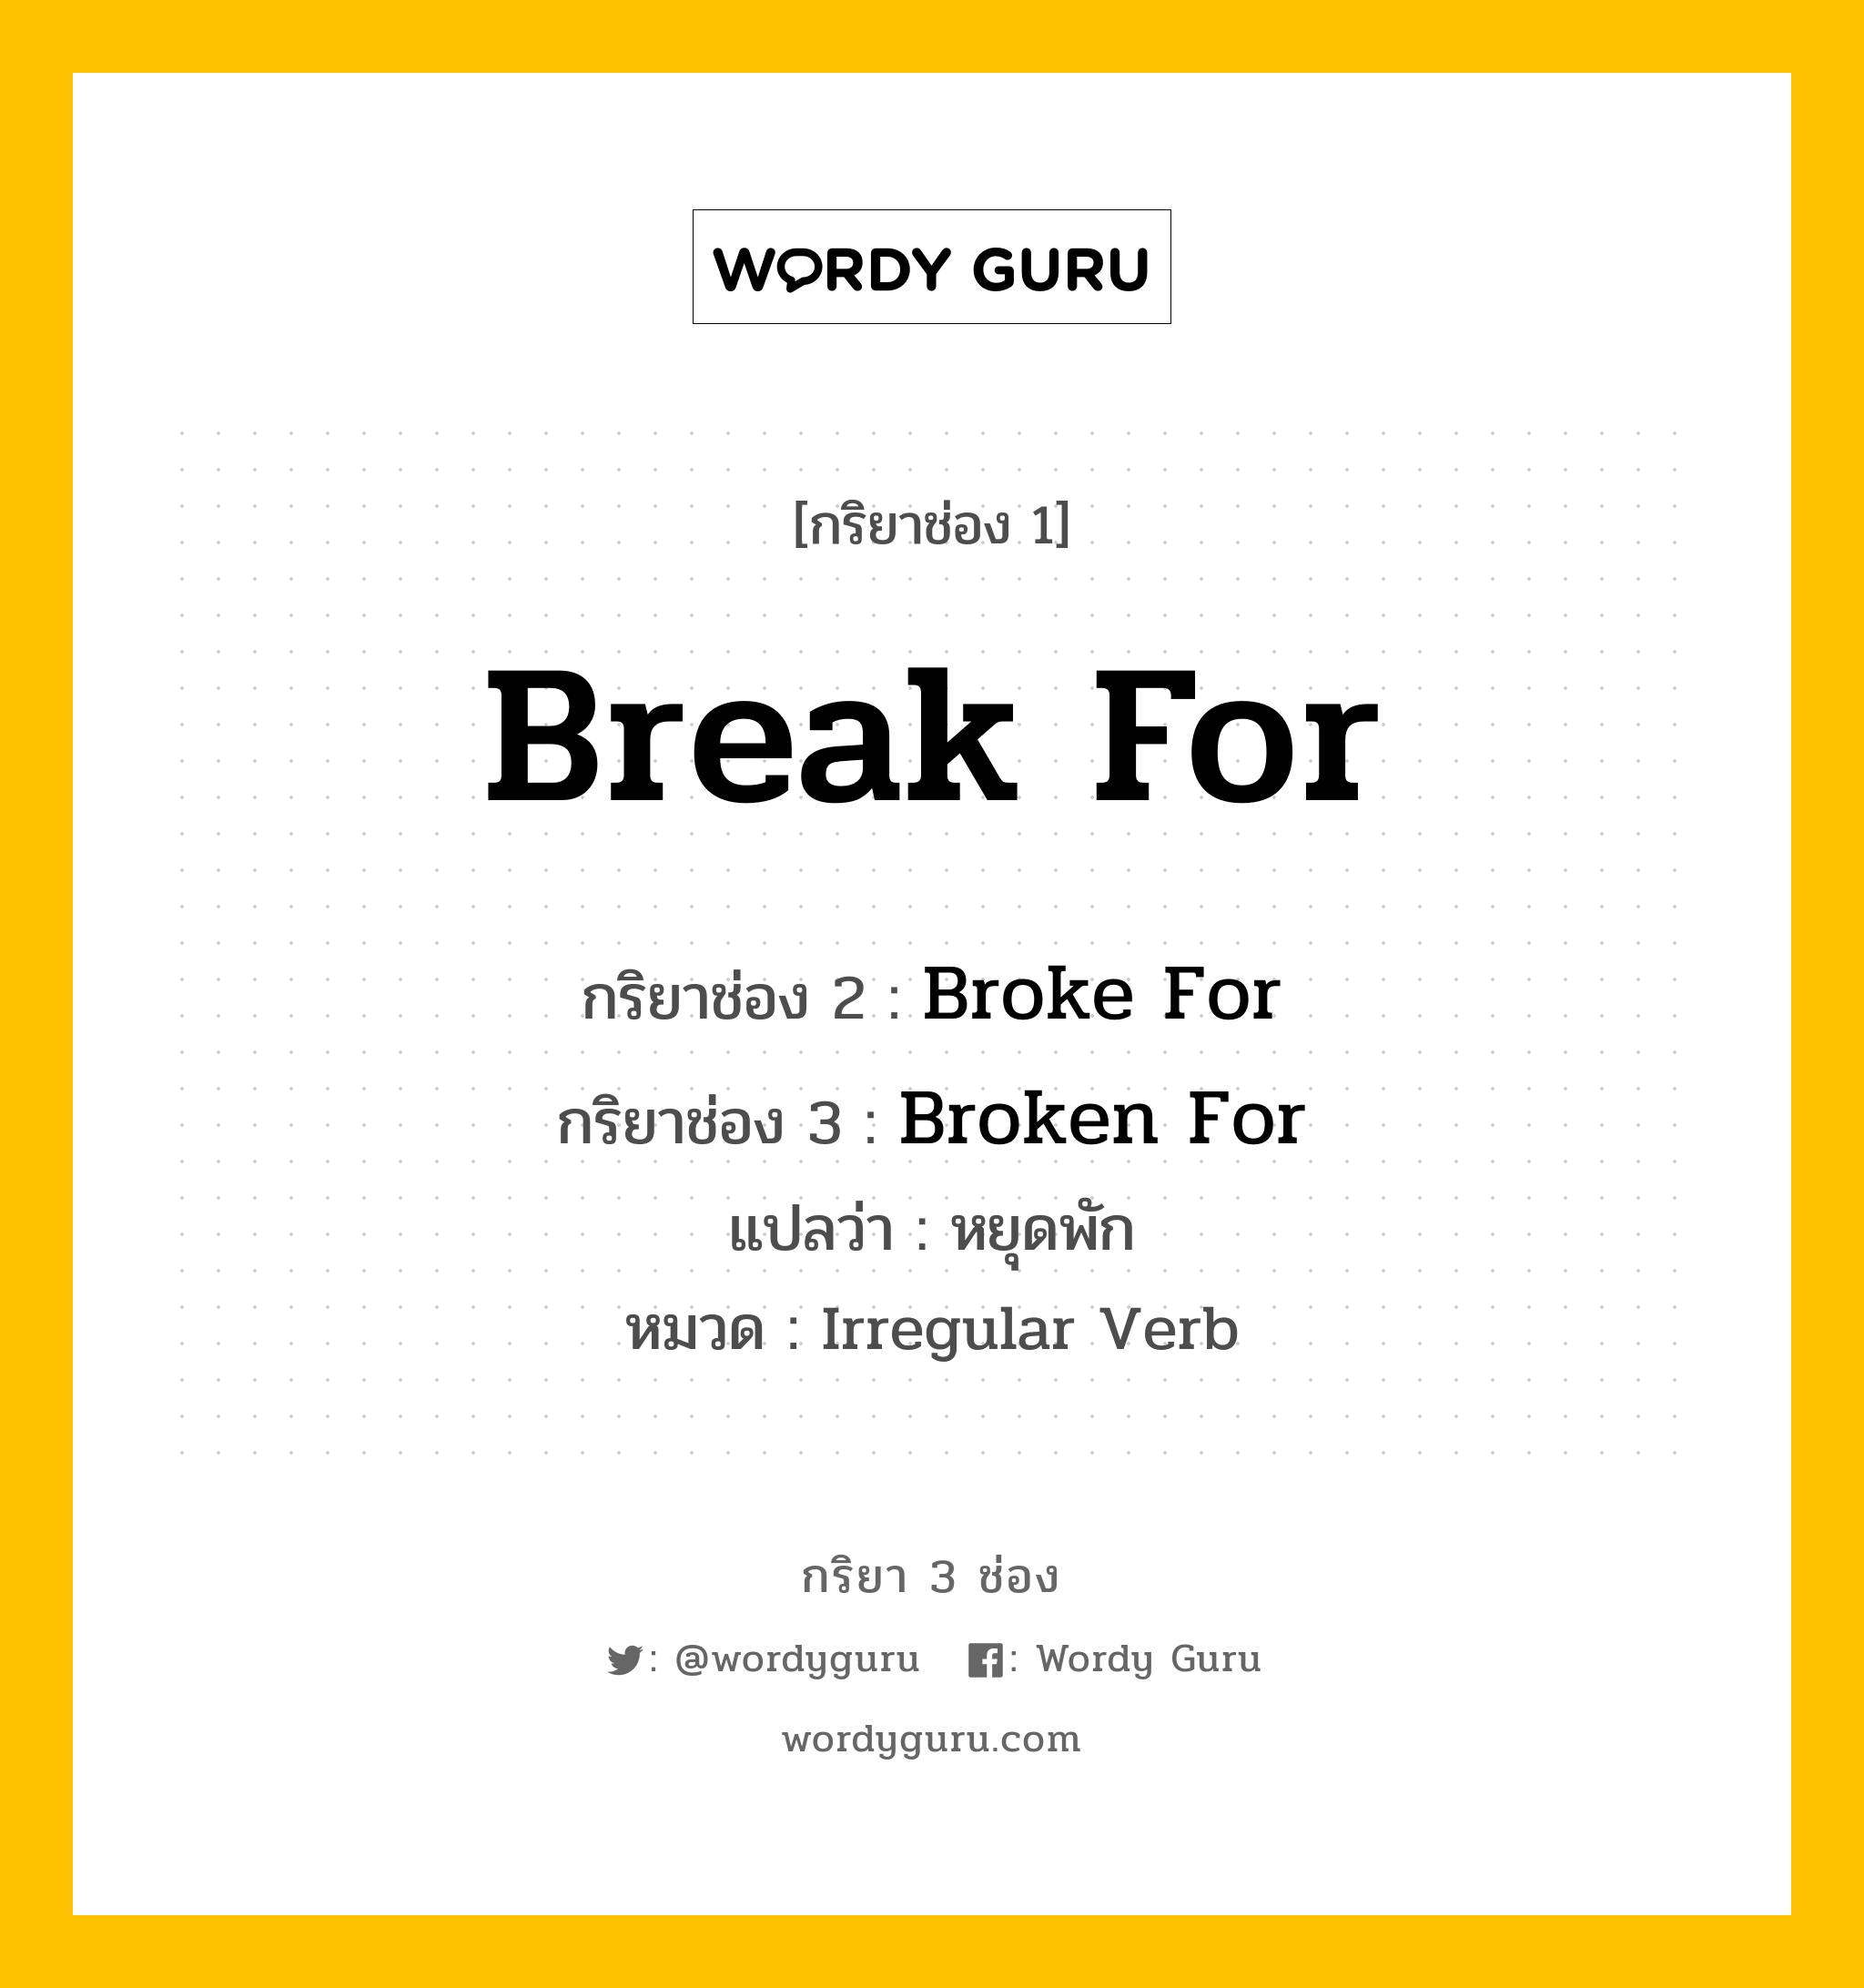 Break For มีกริยา 3 ช่องอะไรบ้าง? คำศัพท์ในกลุ่มประเภท Irregular Verb, กริยาช่อง 1 Break For กริยาช่อง 2 Broke For กริยาช่อง 3 Broken For แปลว่า หยุดพัก หมวด Irregular Verb หมวด Irregular Verb